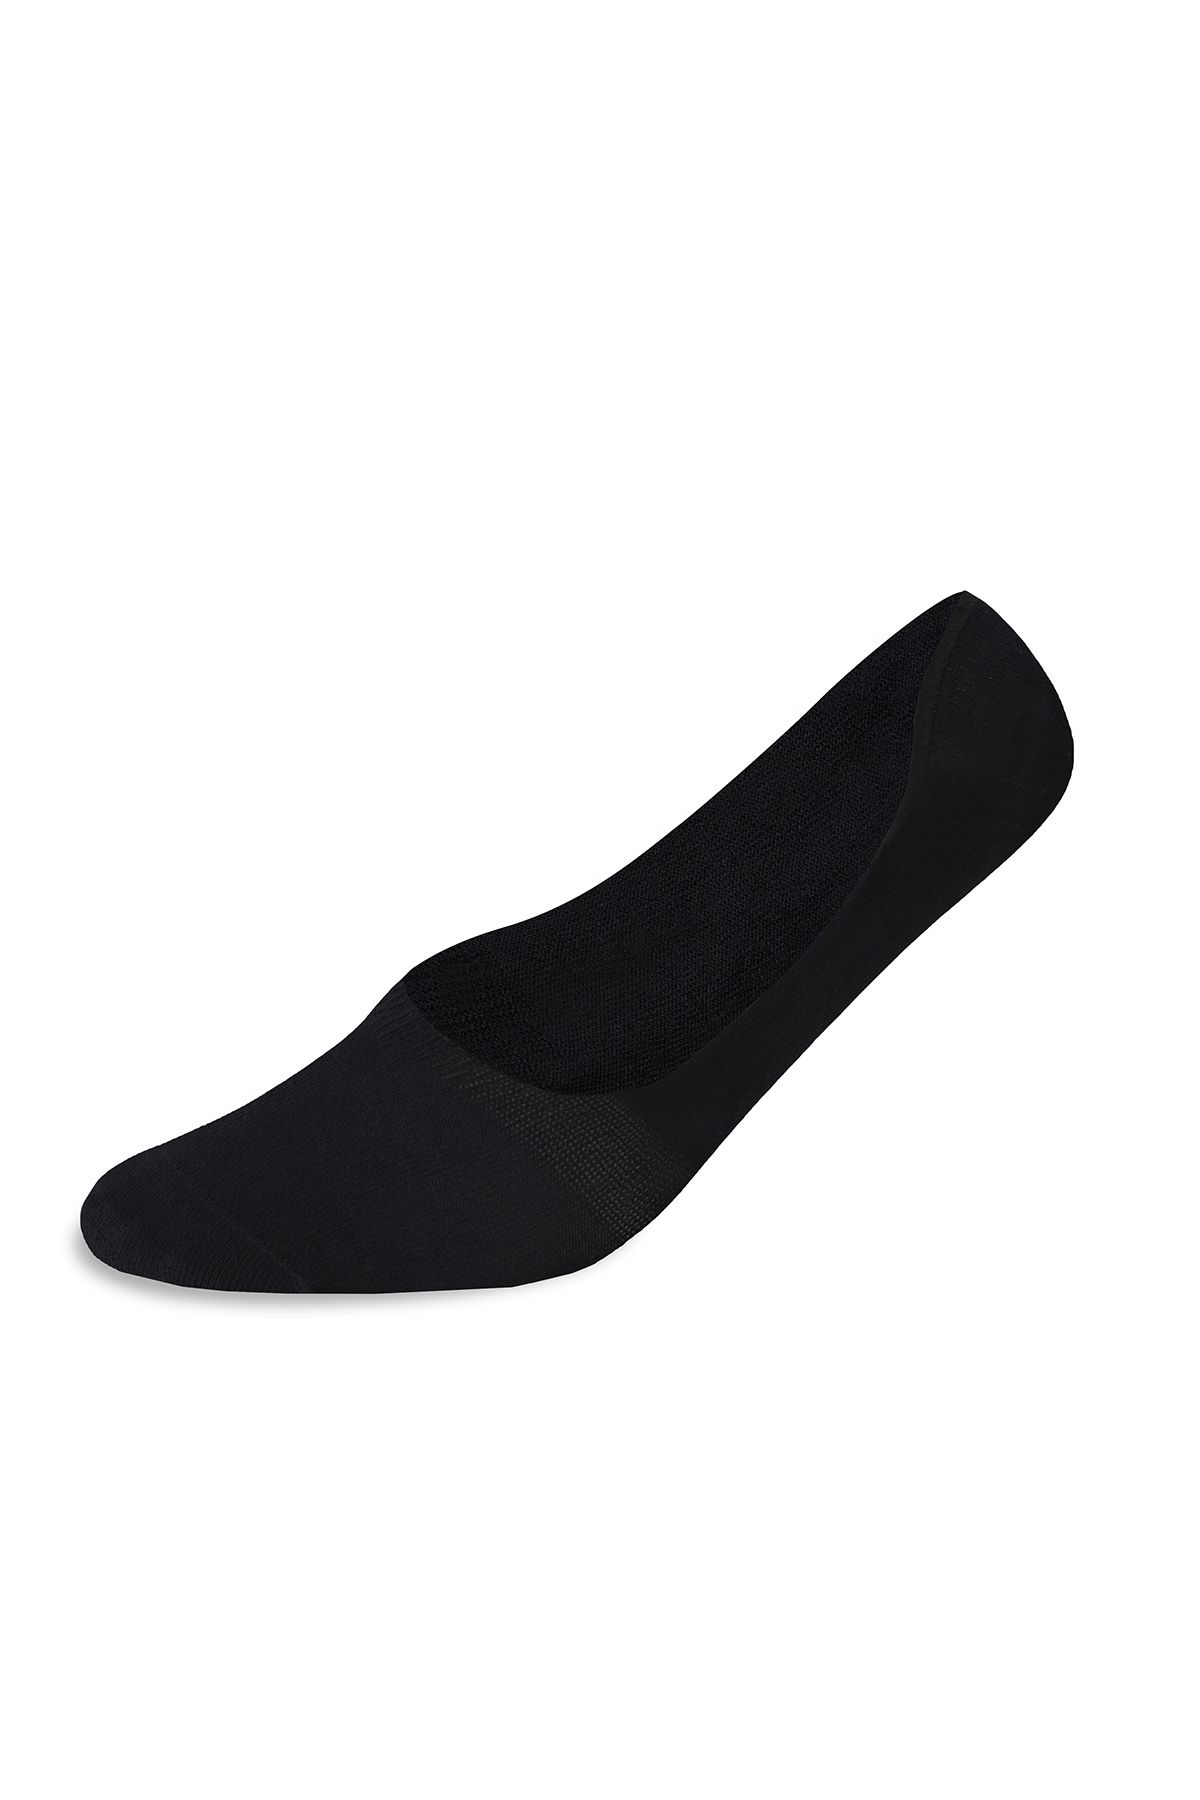 Hemington Bambu Karışımlı Görünmez Siyah Çorap